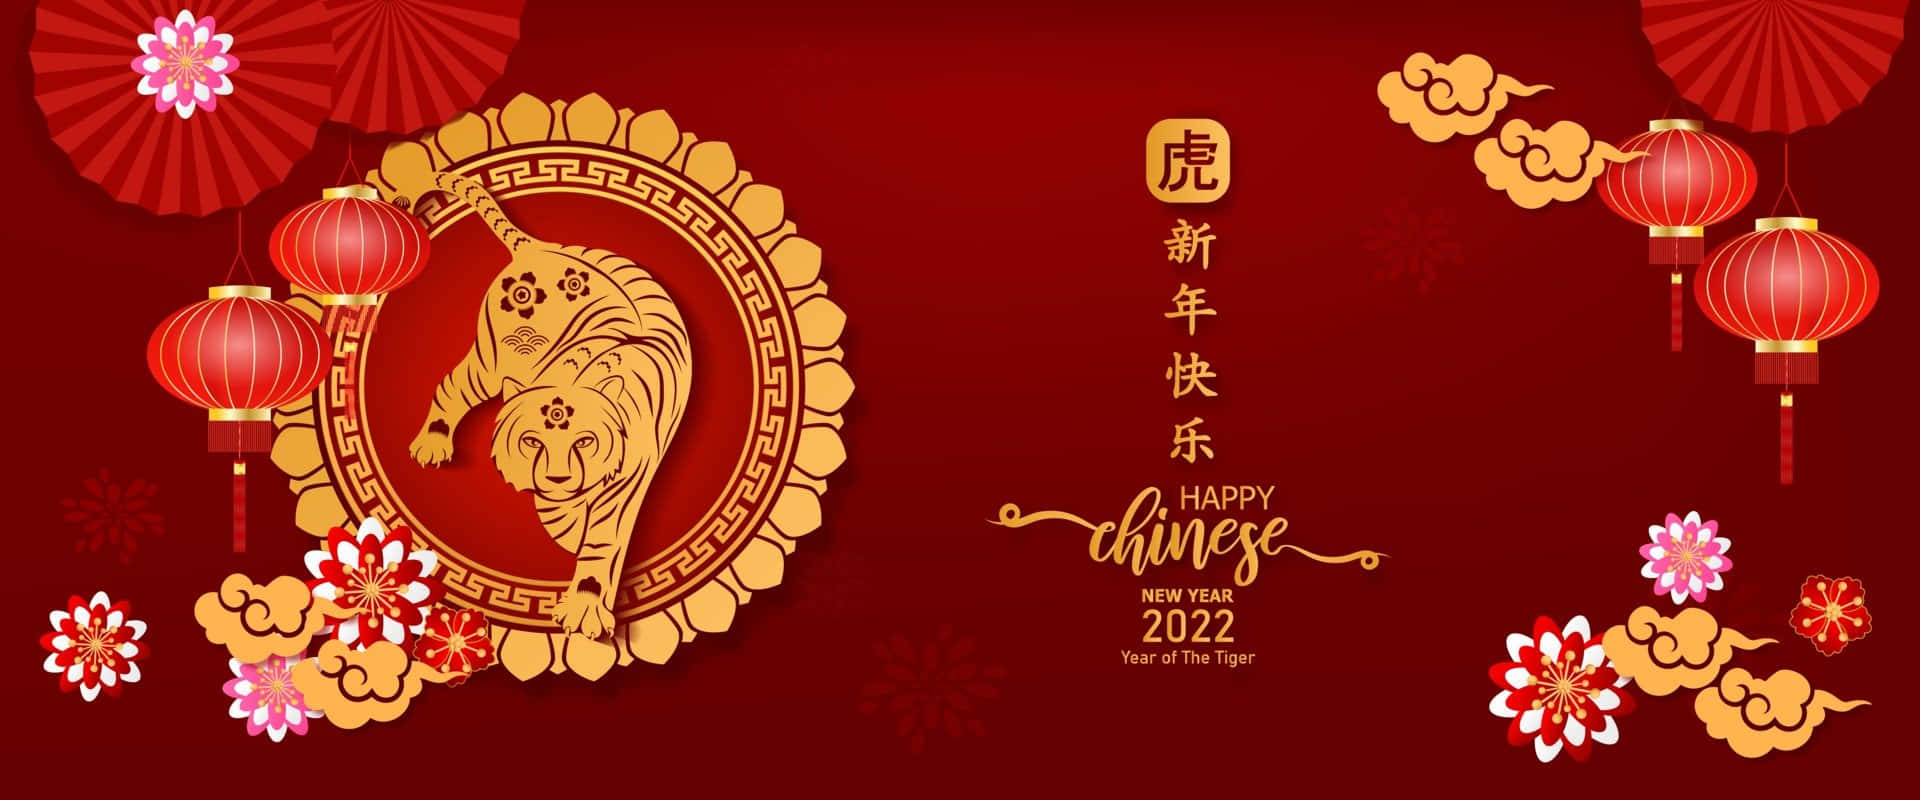 Imágenes Del Año Nuevo Chino 2022